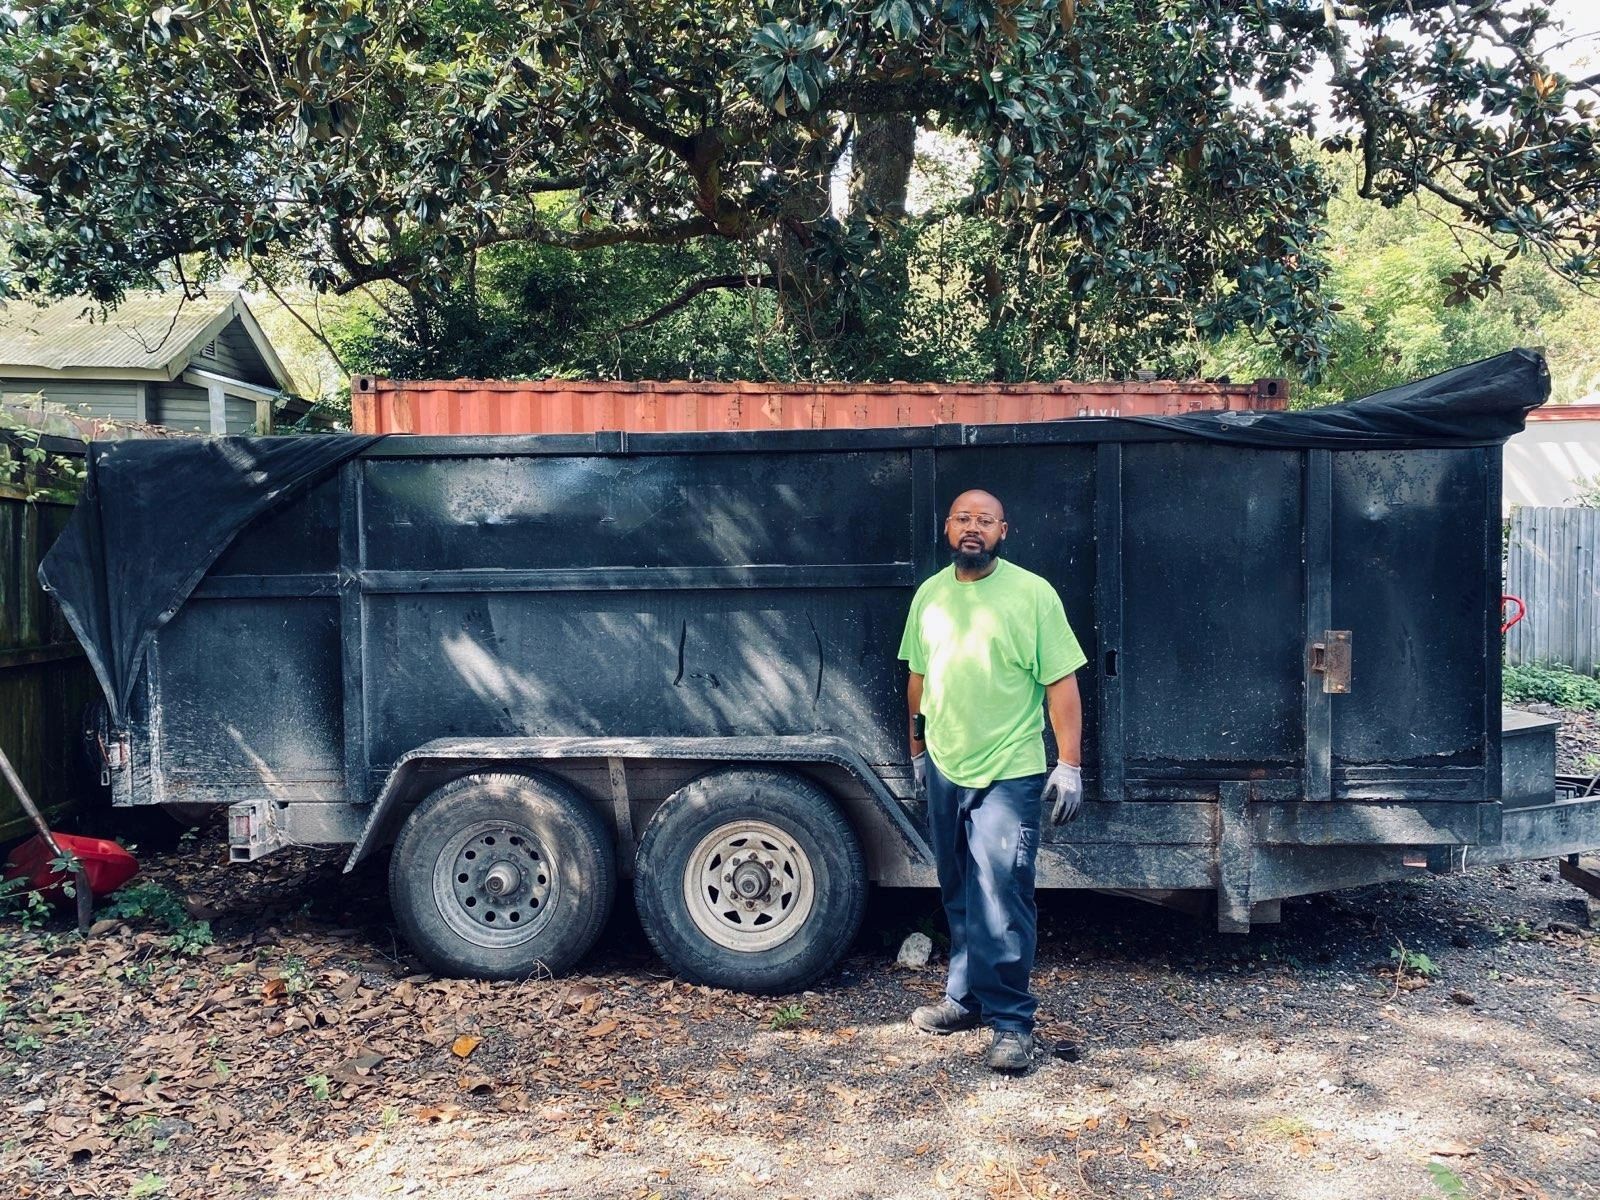 Junk removal Jacksonville FL
We load $380.00 
You load 2 day dumpster rental $280.00